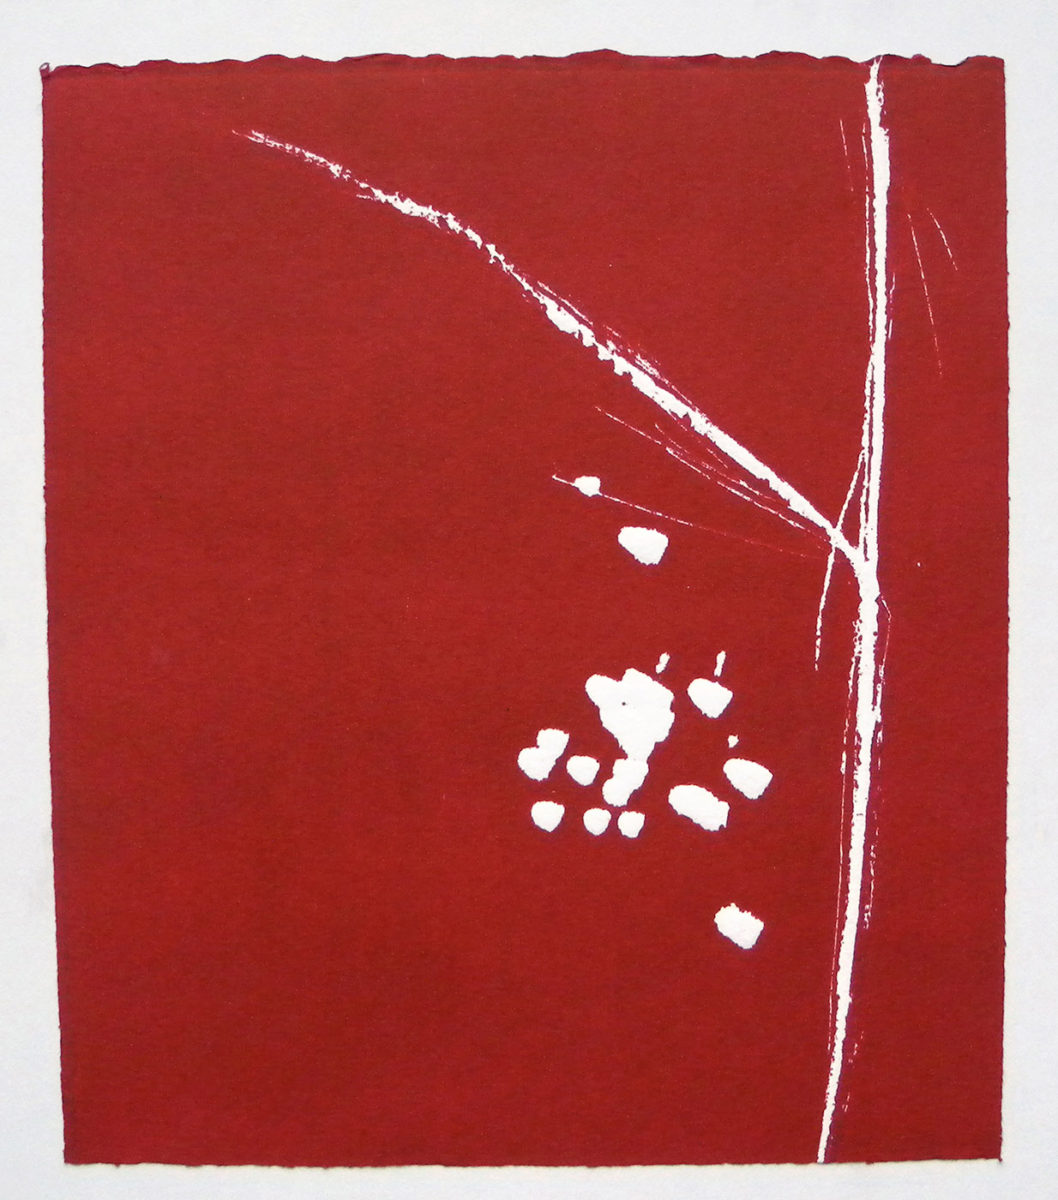 MARC FELD 2012 SONG FOR STEVE LACY 1 Gravure sur bois encre sur papier 25 x 26 cm (Tirage Patrick Vernet)